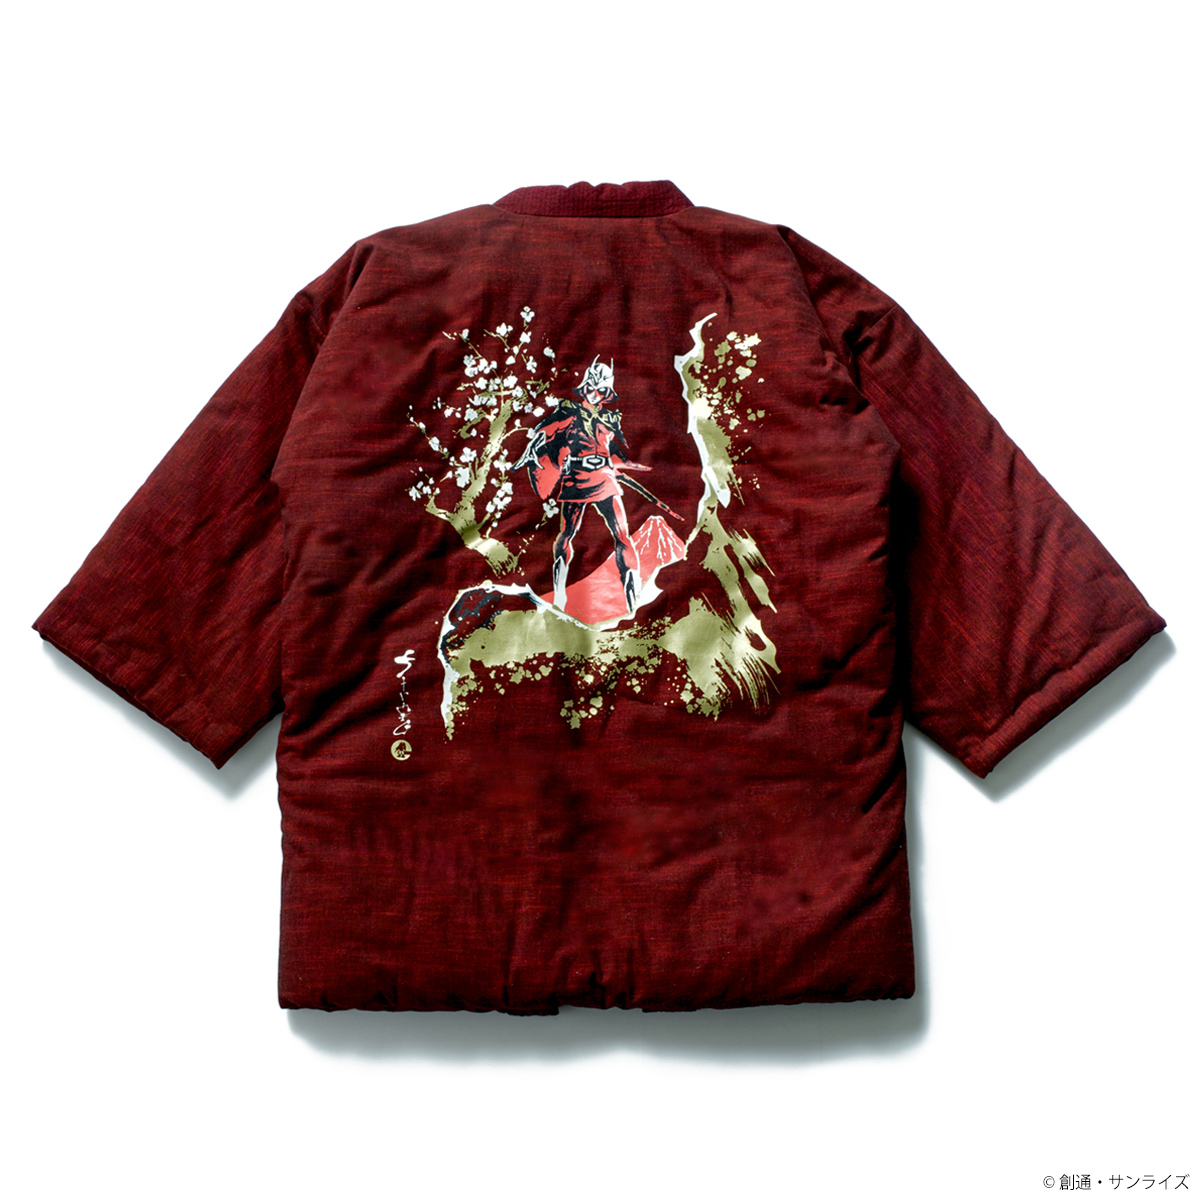 STRICT-G JAPAN 宮田織物『機動戦士ガンダム 』半纏ロング(梅) 赤い彗星